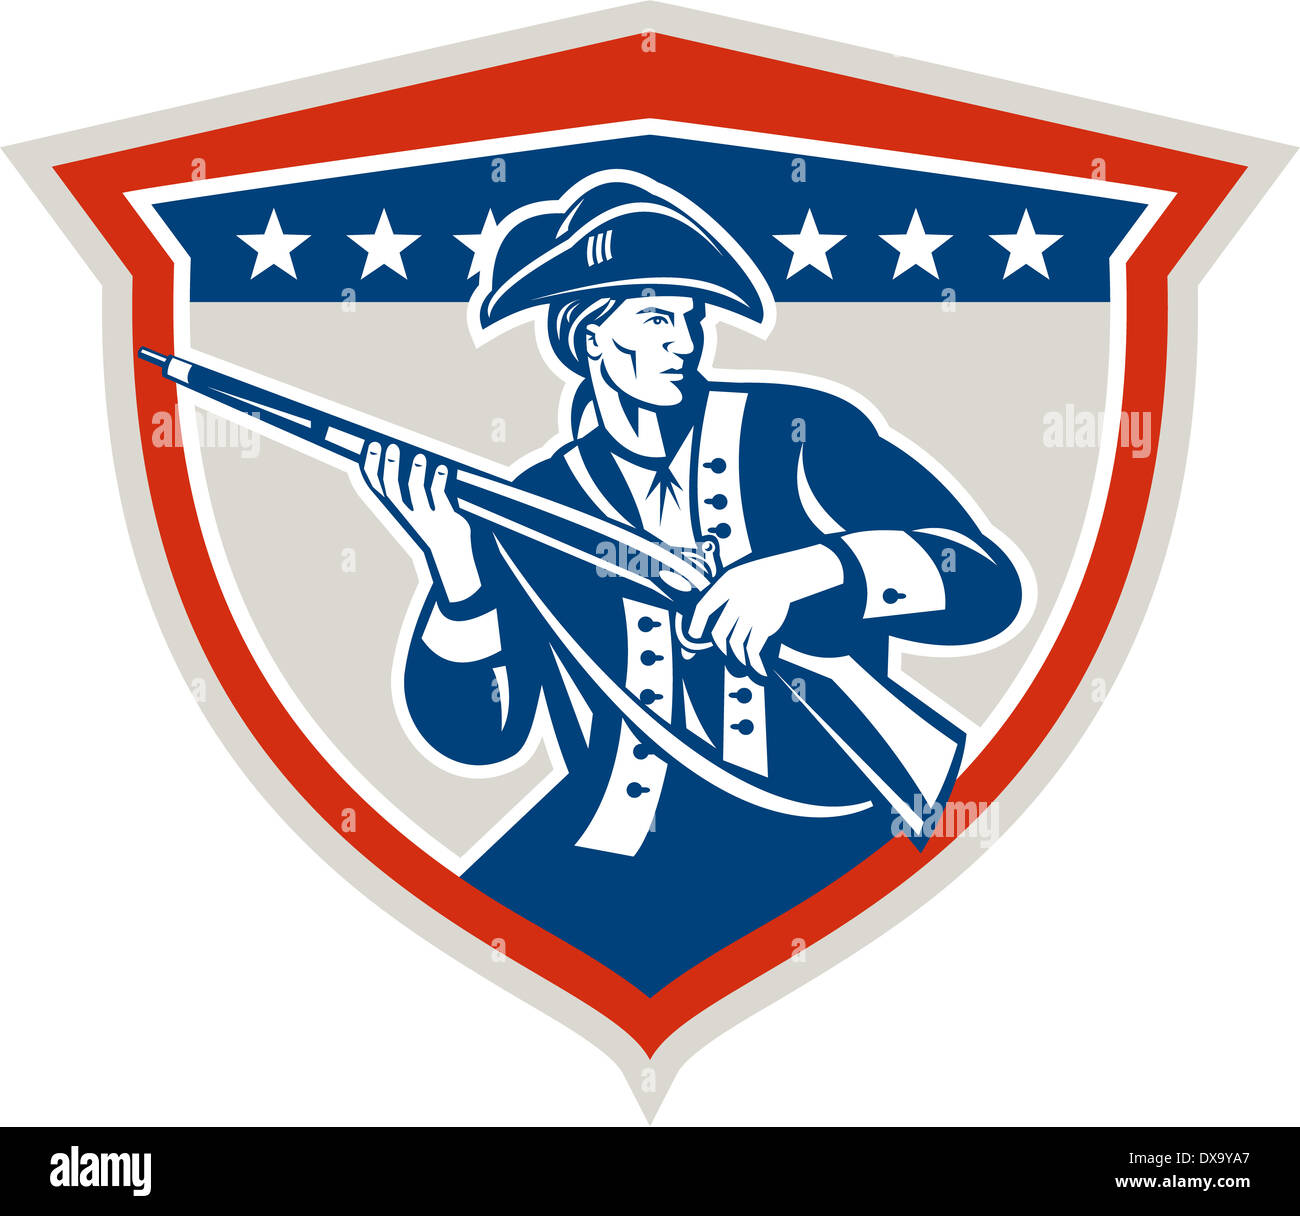 Illustration d'un patriote américain tenant une carabine fusil face à l'avant fixé à l'intérieur crest protection avec étoiles sur fond isolé fait en style rétro. Banque D'Images